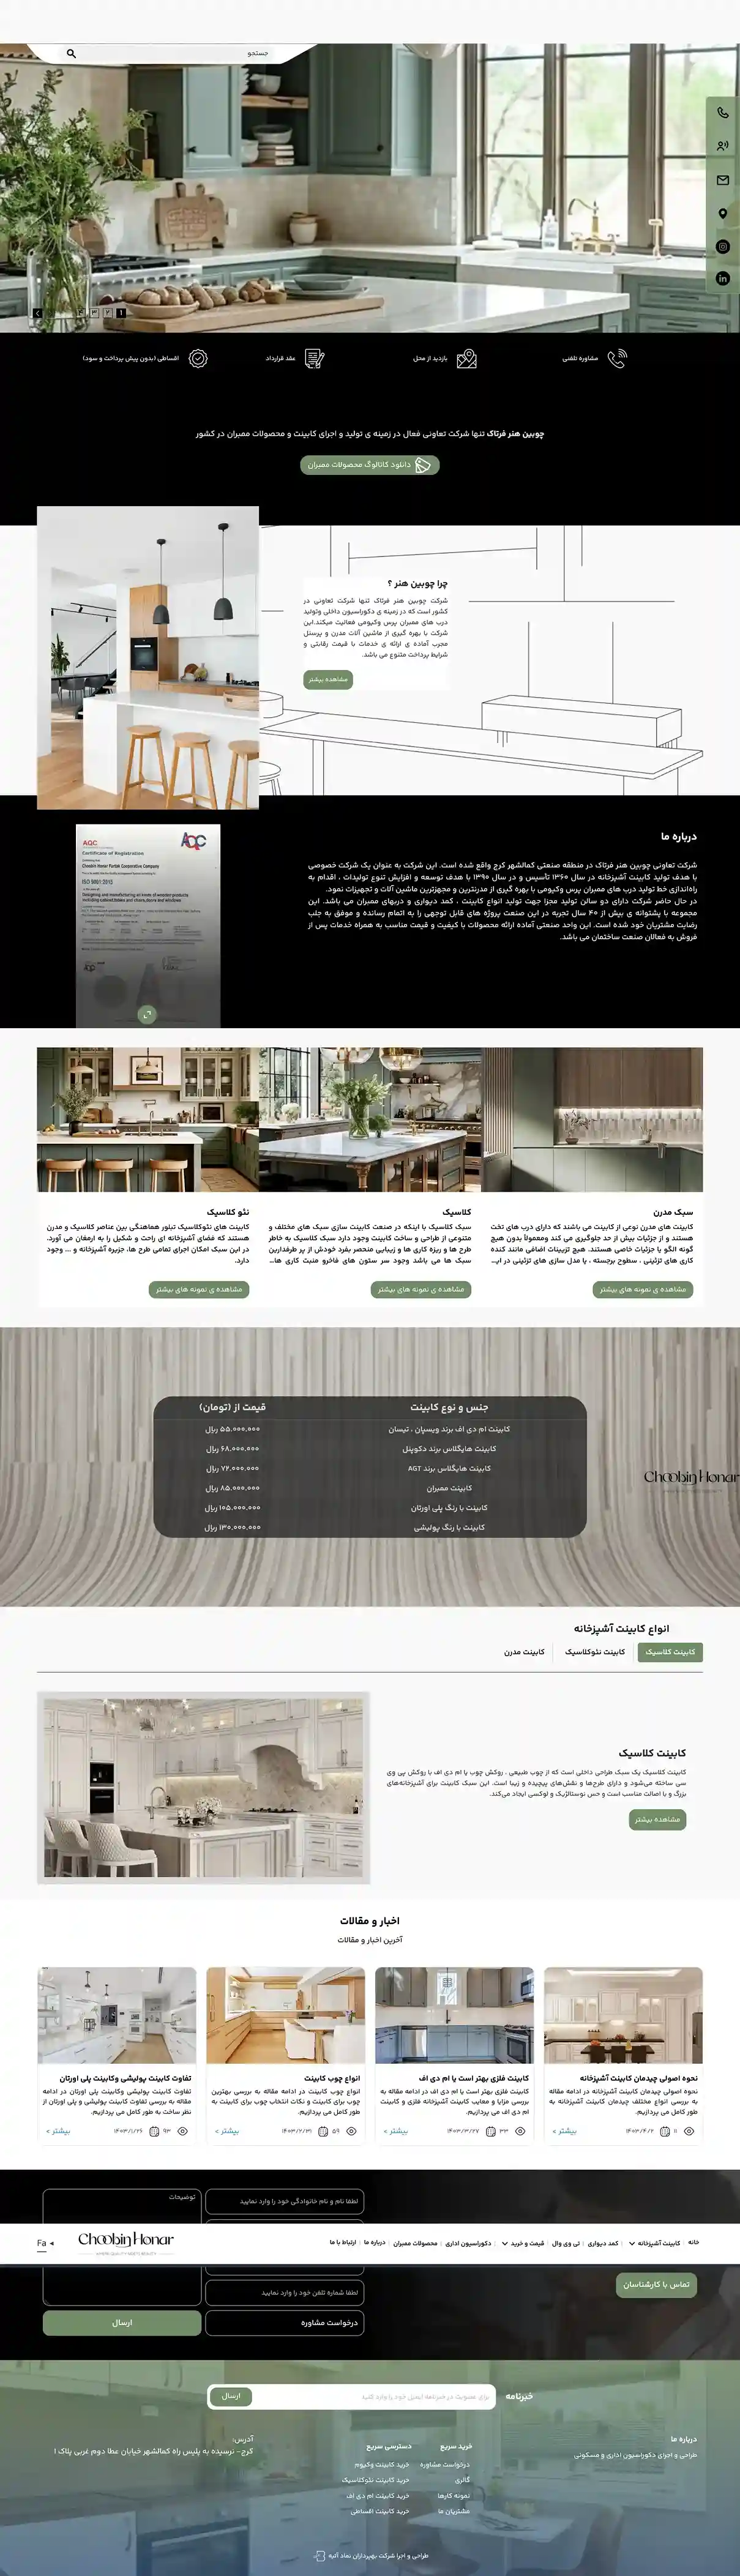 طراحی سایت شرکت چوبین هنر  فرتاک